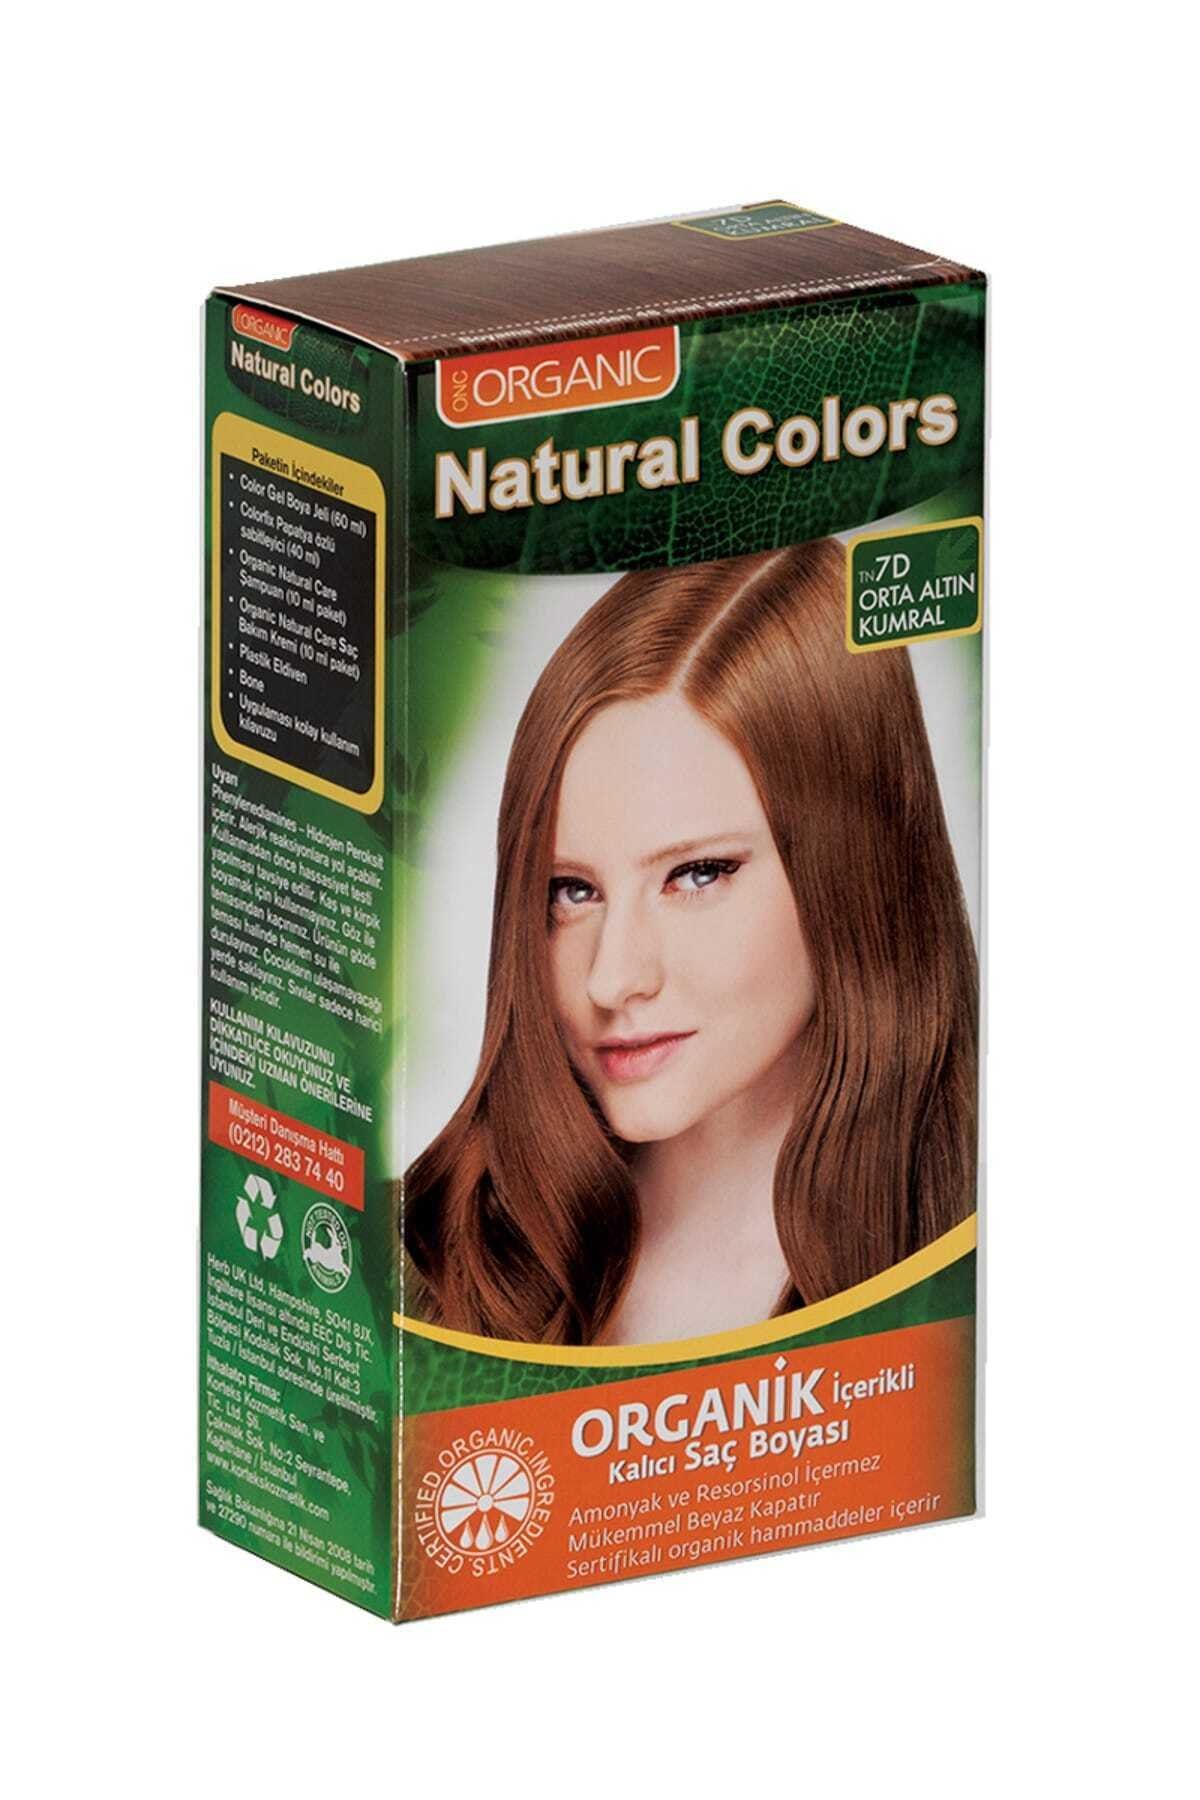 Organic Natural Colors Natural Colors 7d Orta Altın Kumral Organik Saç Boyası